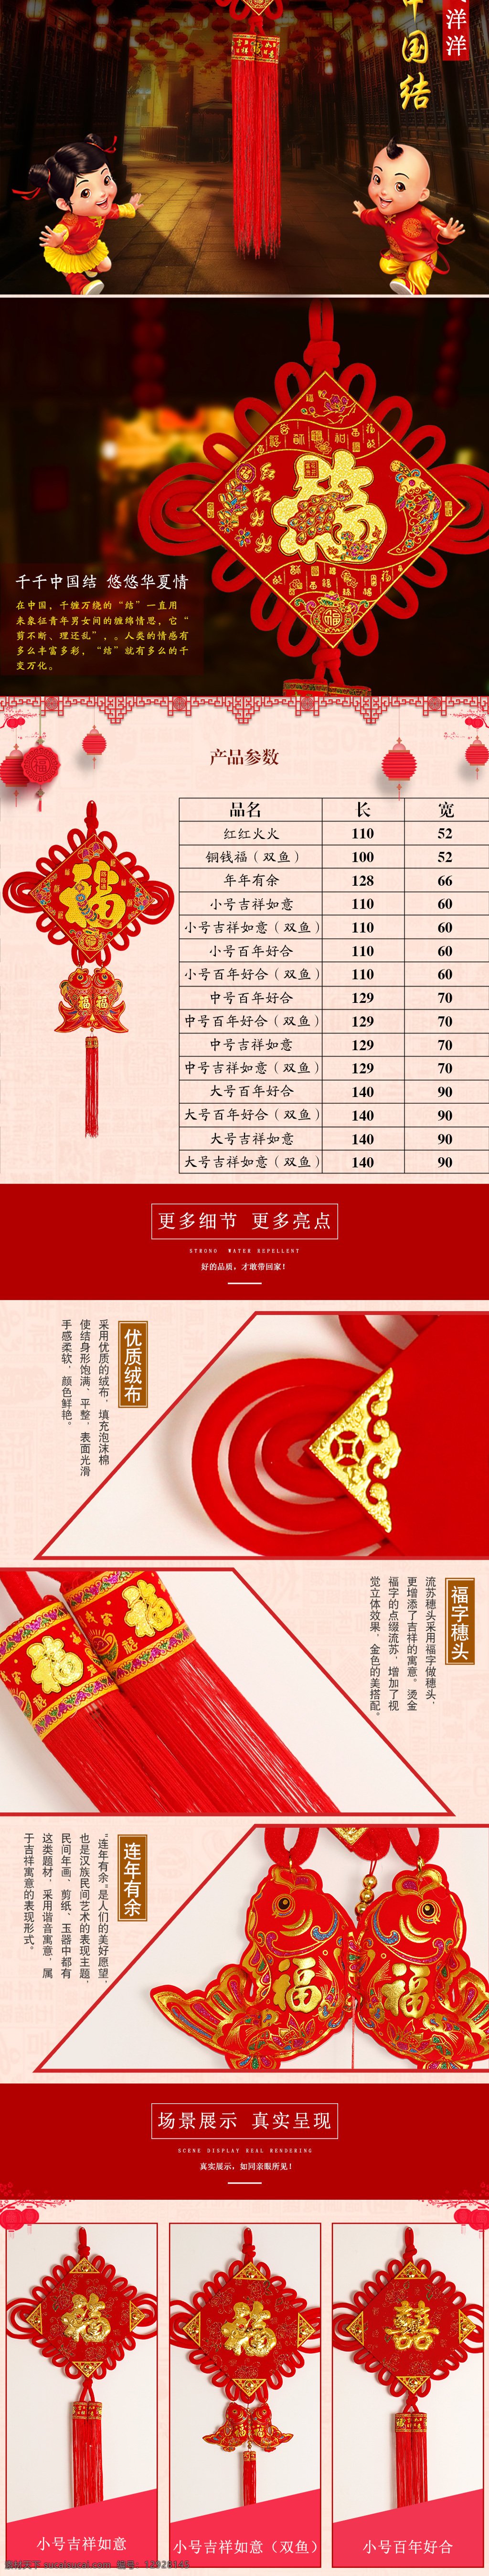 中国 风 中国结 详情 灯笼 过年气氛 红色 喜庆 格式 简单排版详情